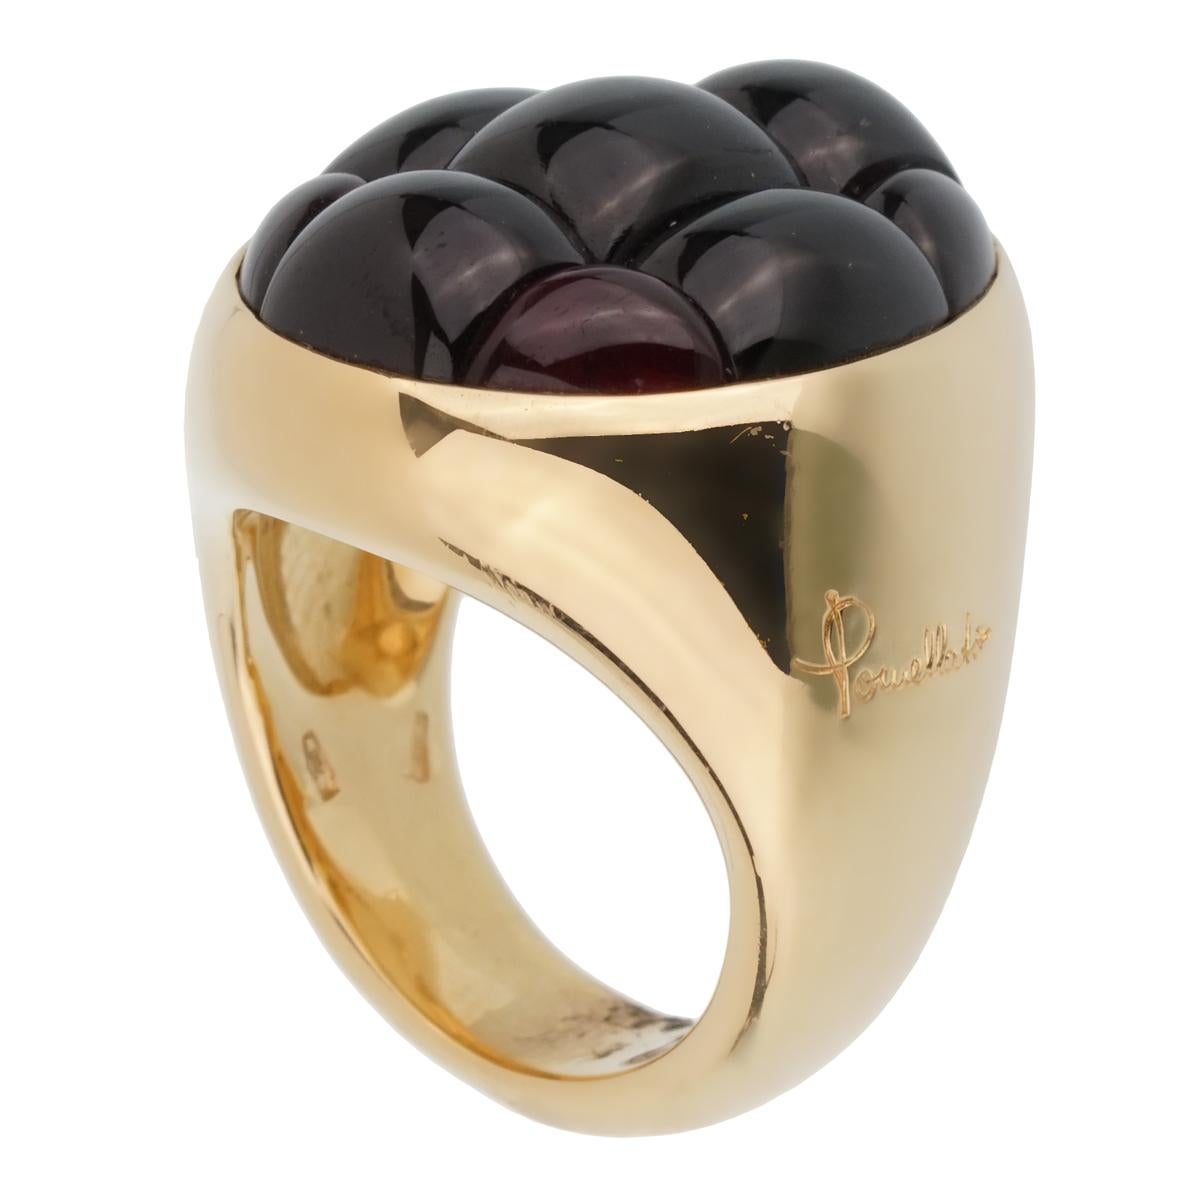 Ein fabelhafter, brandneuer Pomellato-Ring mit einem 24-karätigen Granat, der in schimmerndes 18-karätiges Gelbgold gefasst ist. Der Ring hat die Größe 6,5 und kann in der Größe geändert werden.

Verkaufspreis: $9000